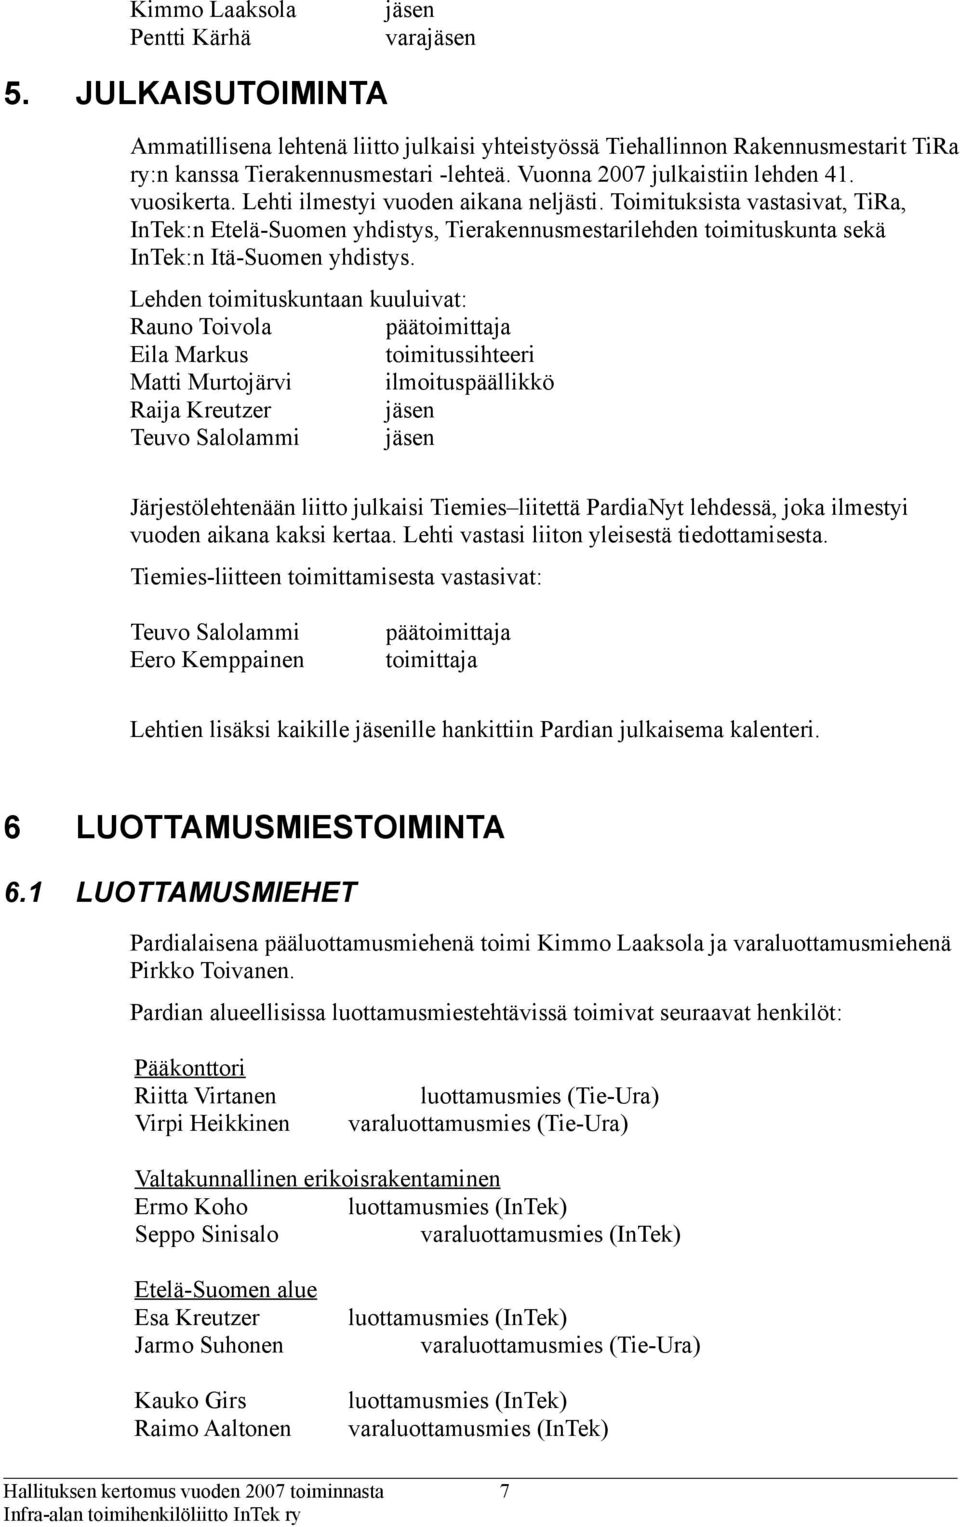 Toimituksista vastasivat, TiRa, InTek:n Etelä-Suomen yhdistys, Tierakennusmestarilehden toimituskunta sekä InTek:n Itä-Suomen yhdistys.